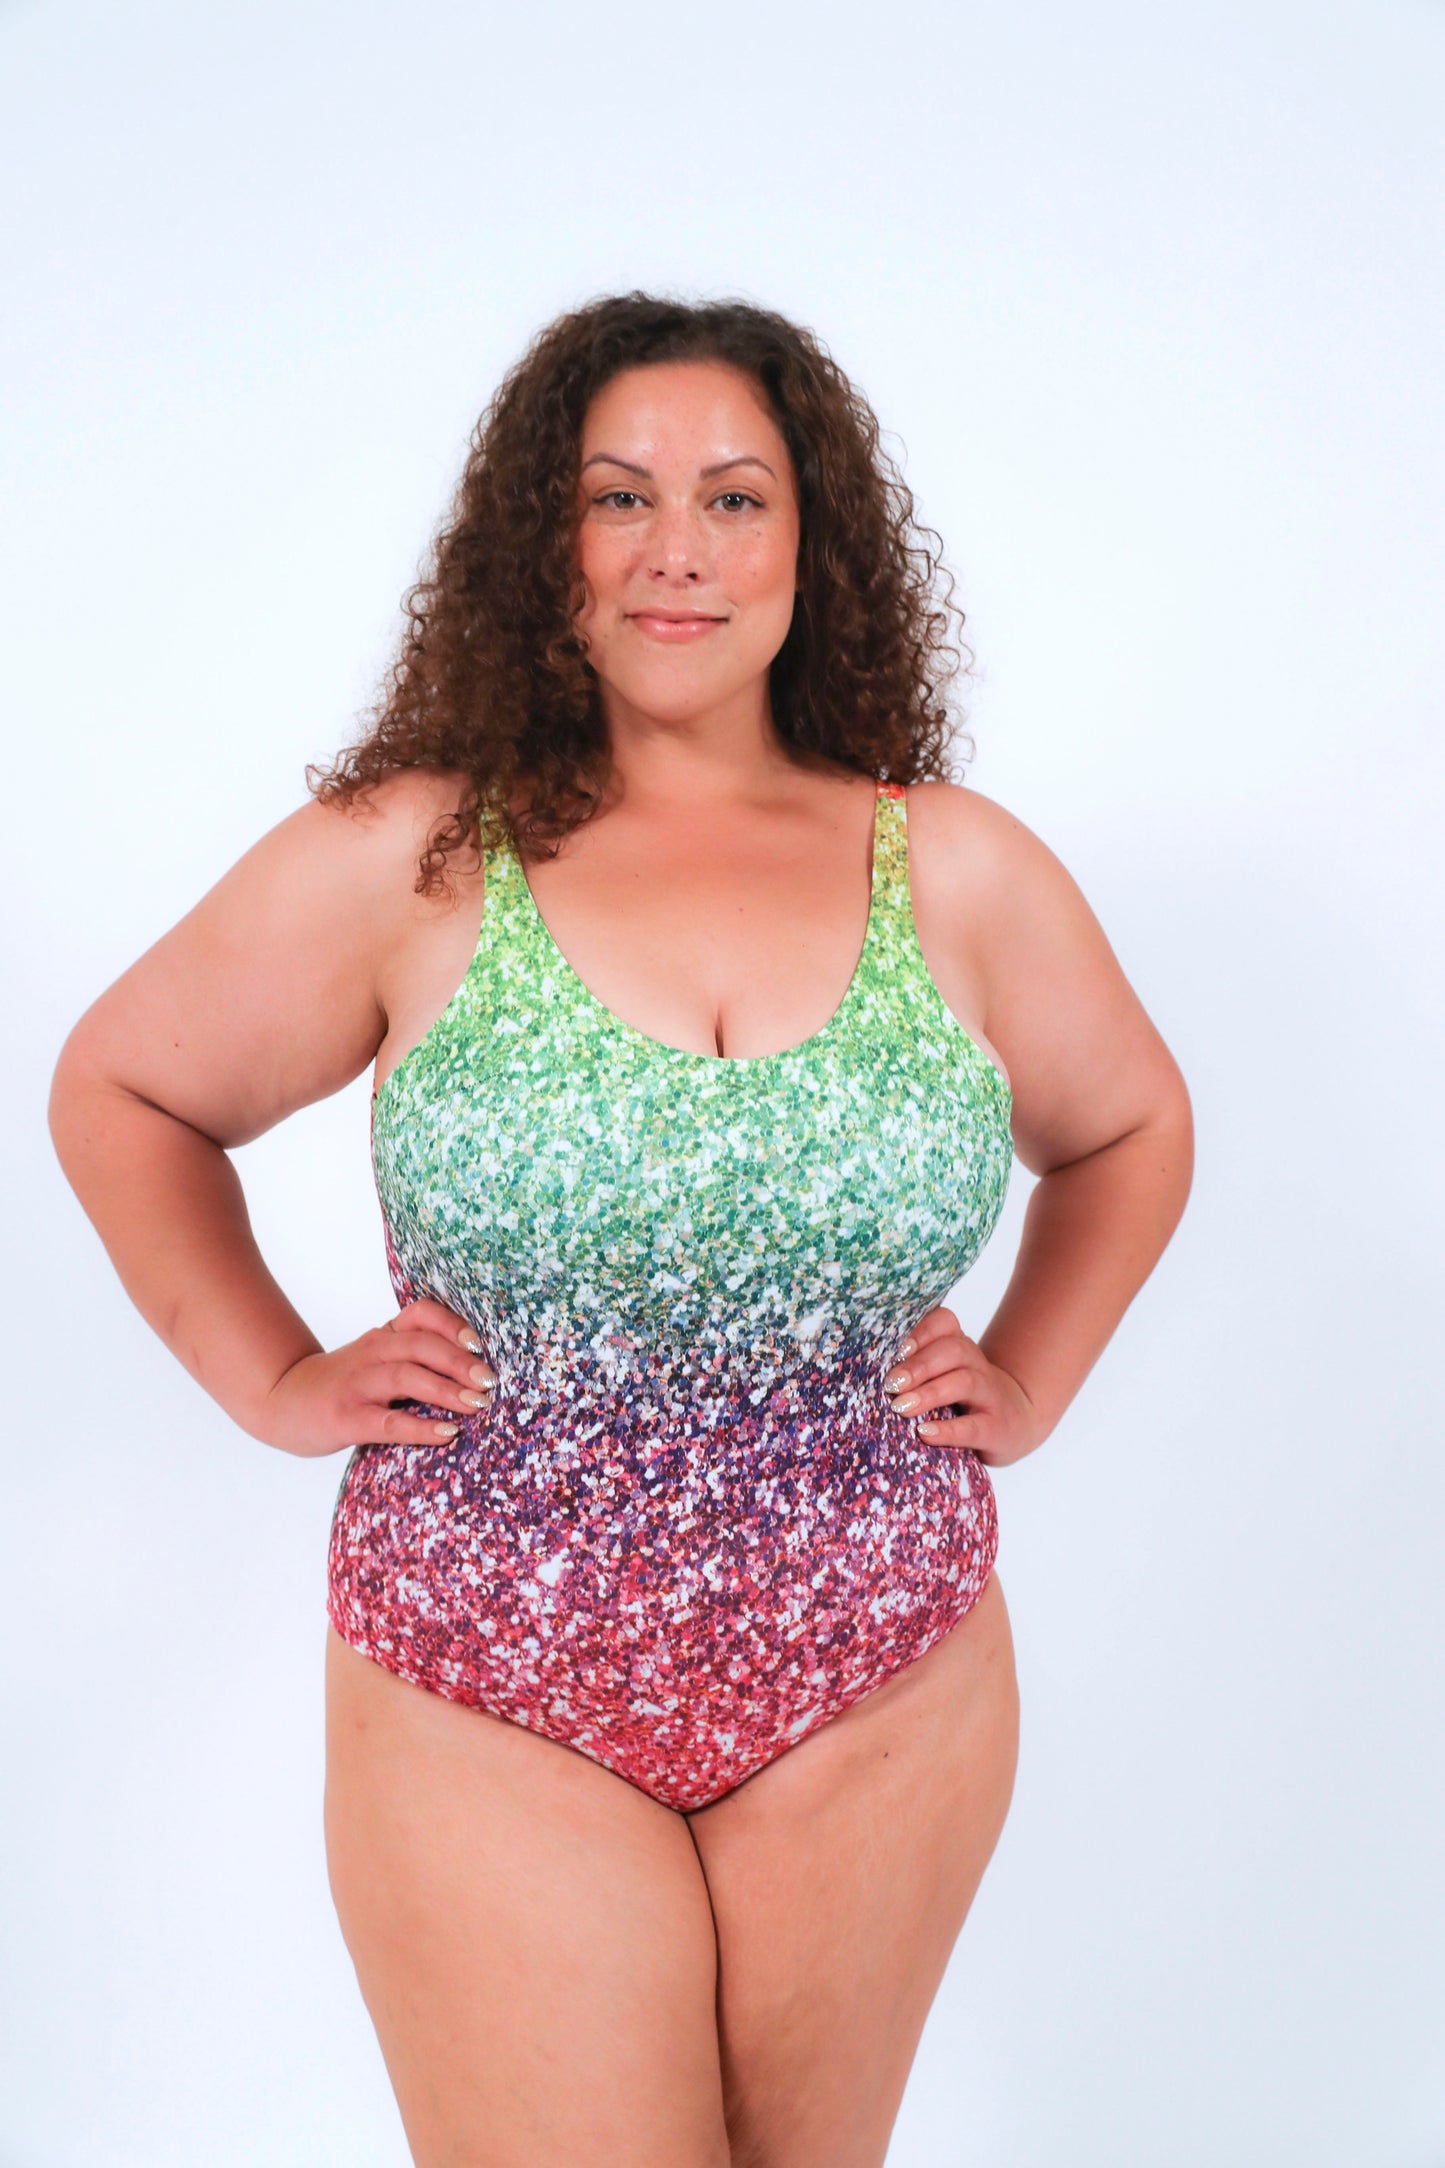 Rainbow Glitter Swimsuit